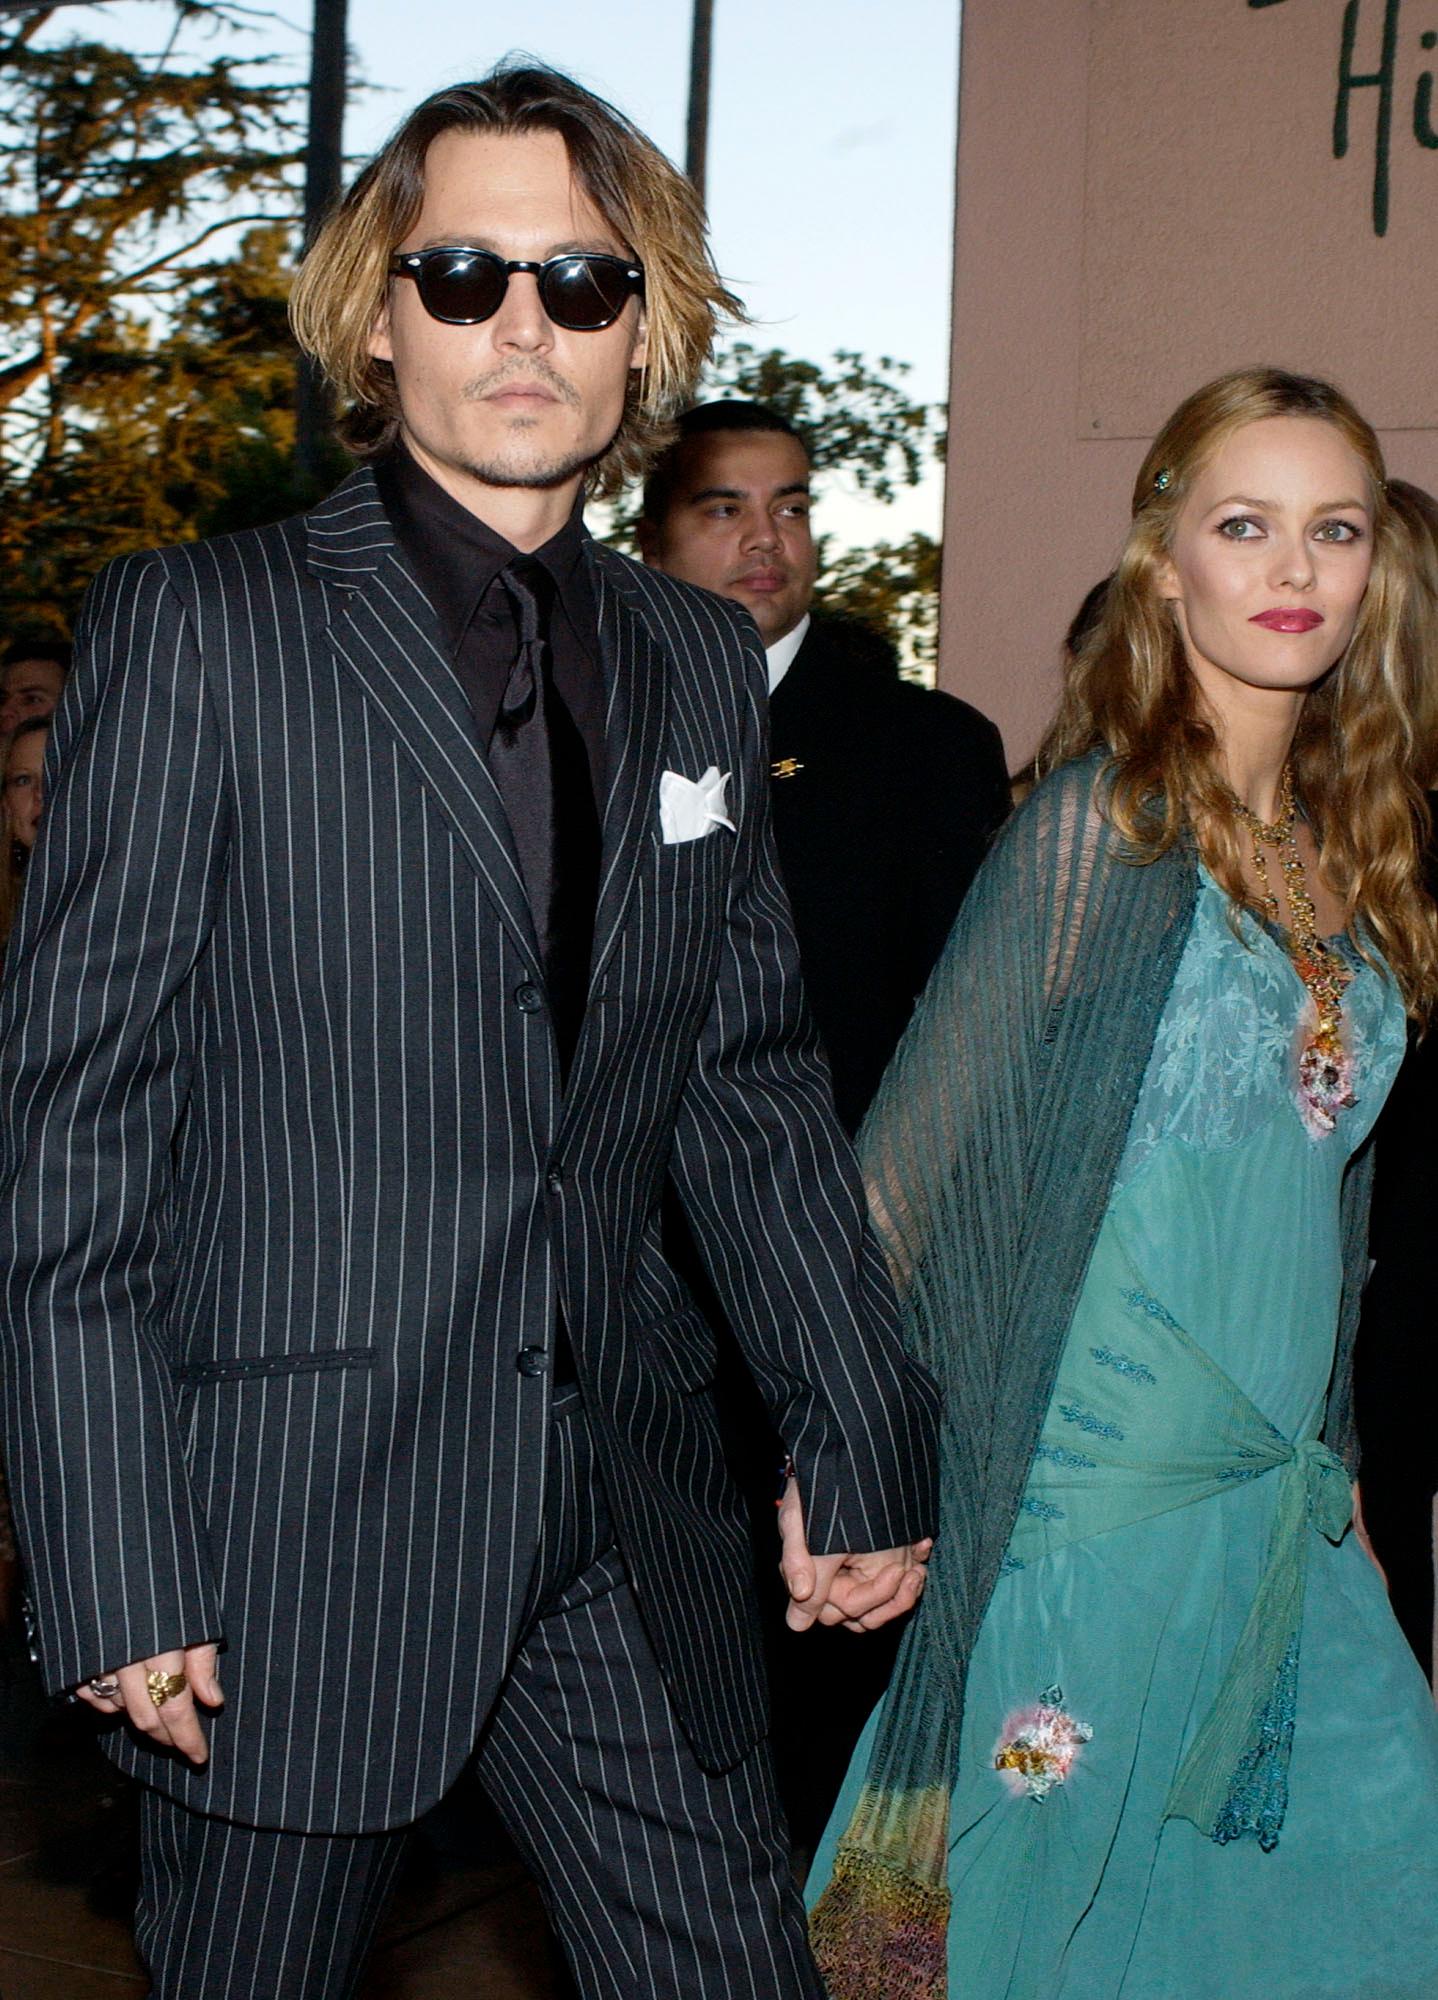 GJENGANGER: Johnny Depp tar gjerne i bruk stripete dress på den røde løperen. Her er han sammen med ekskjæresten Vanessa Paradis på «Critics Choice Awards» i 2004.